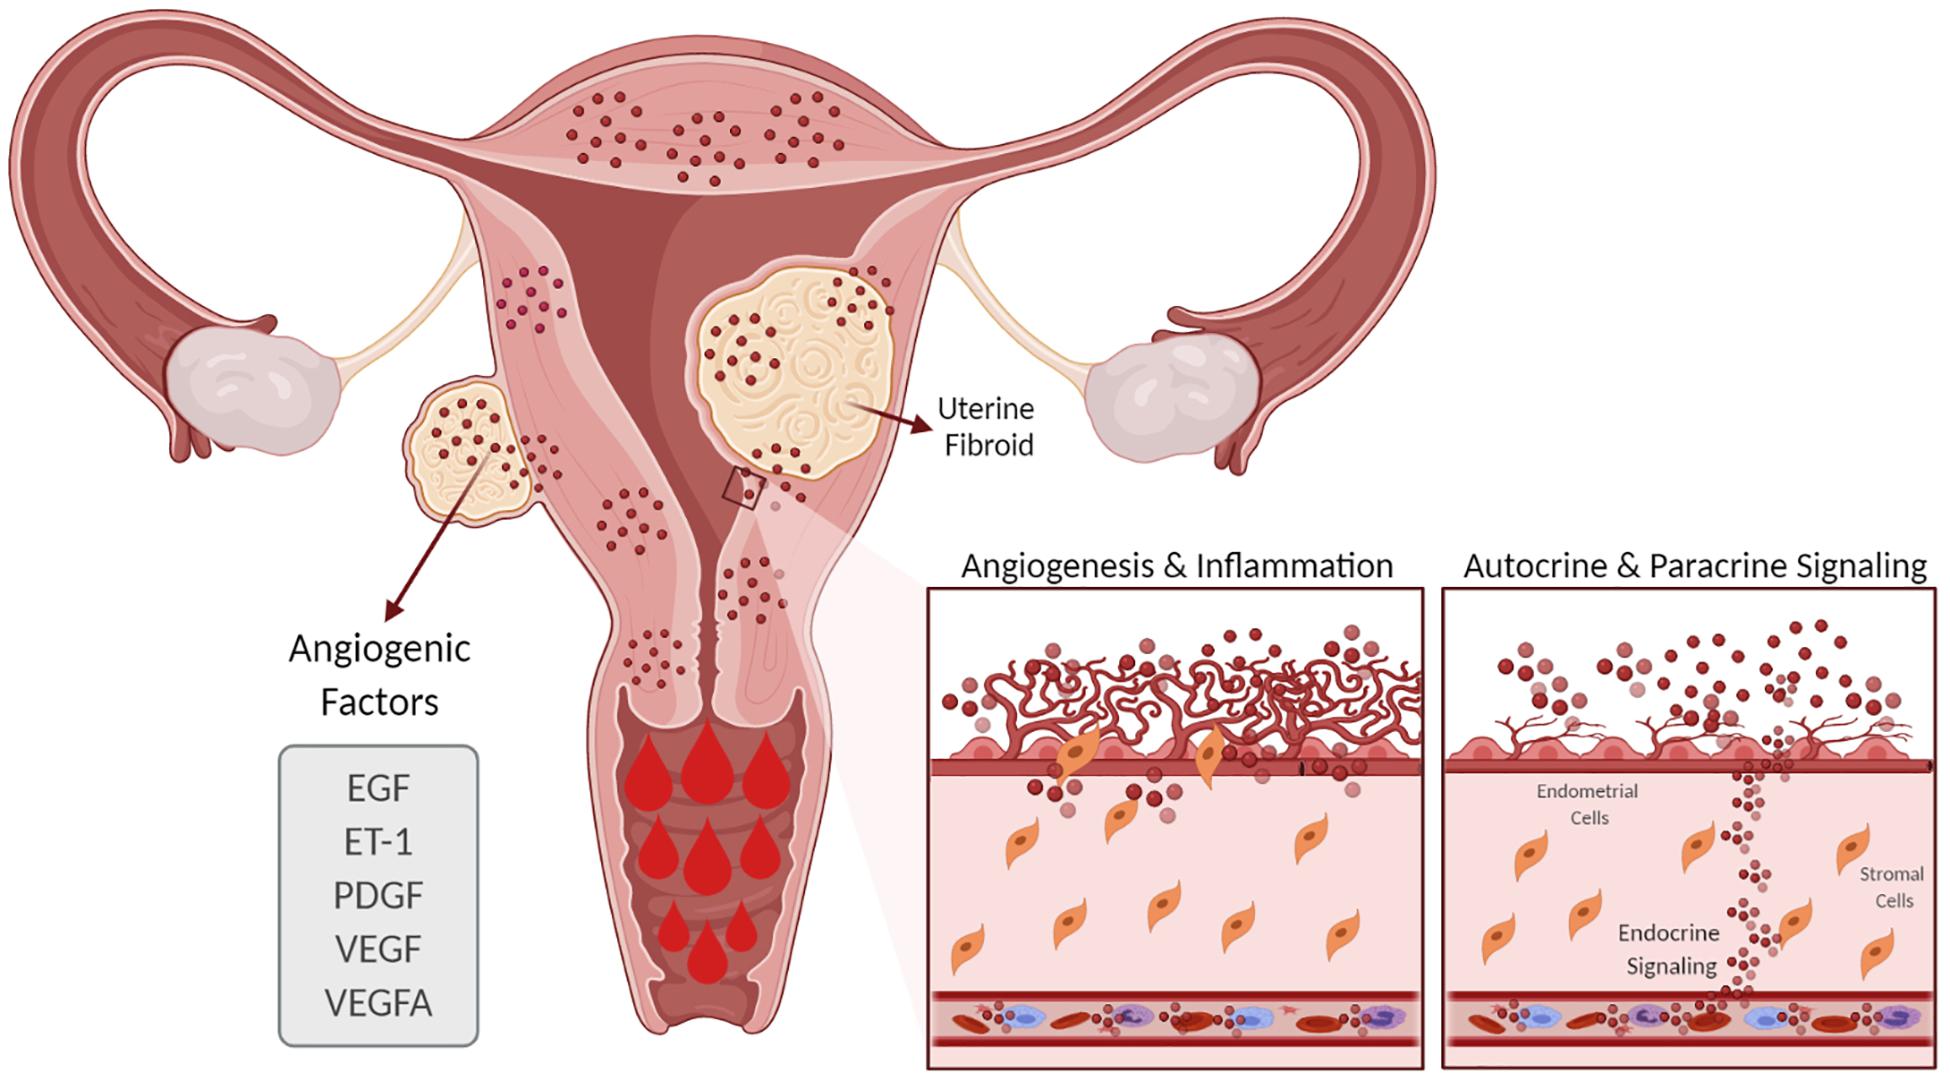 Frontiers Understanding The Impact Of Uterine Fibroids On Human